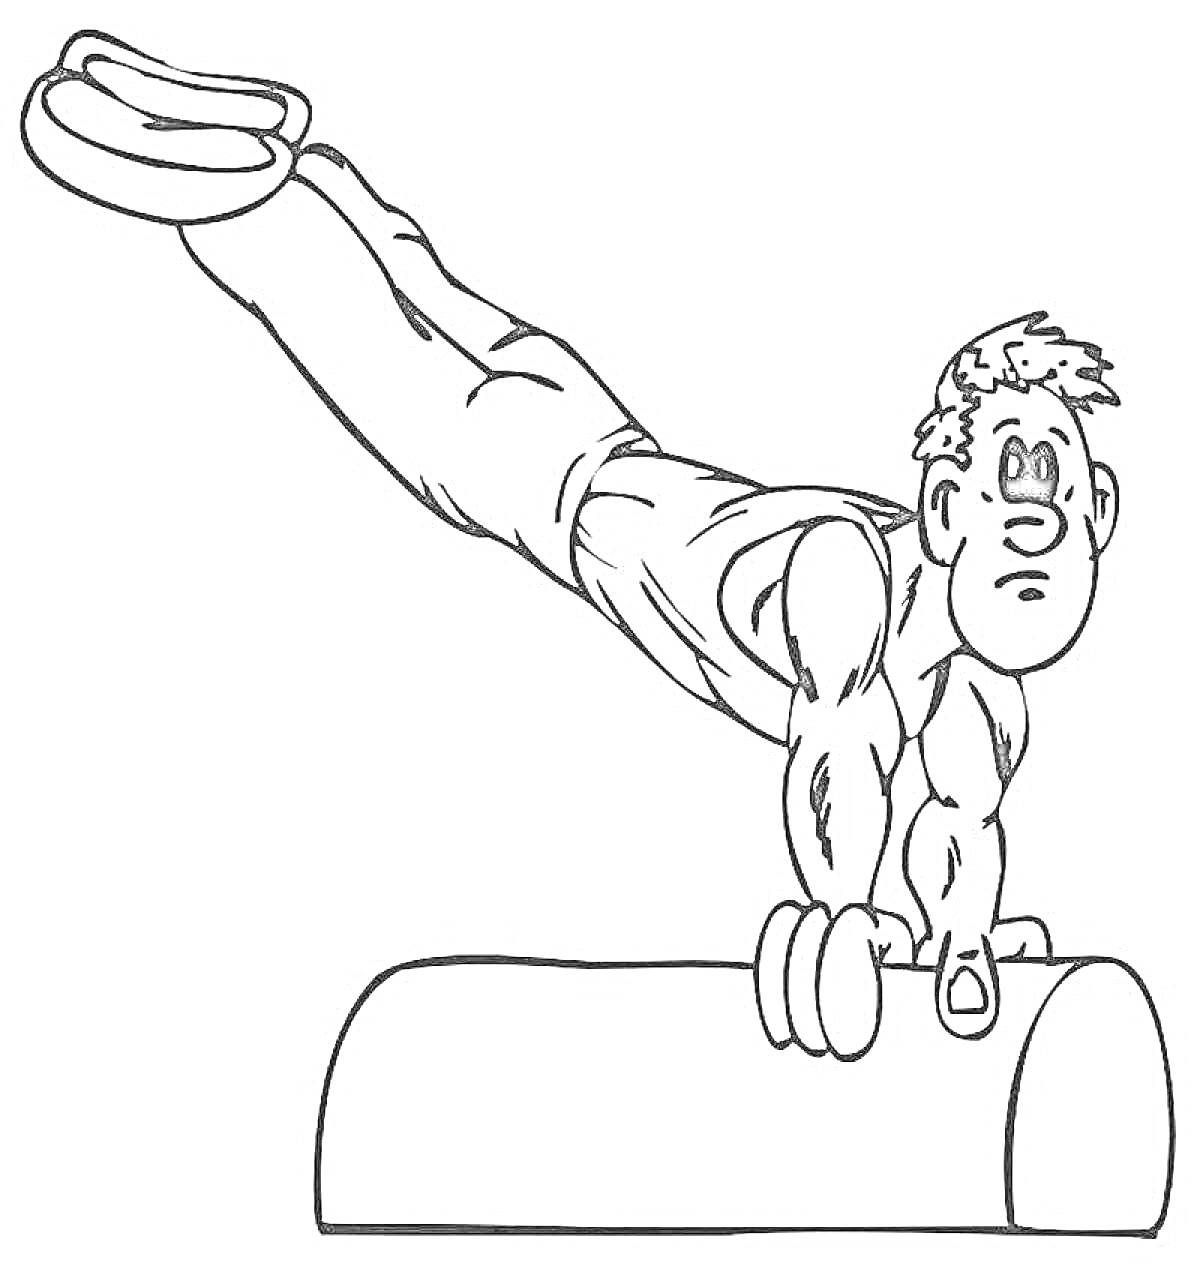 Раскраска Гимнаст выполняет упражнение на гимнастическом снаряде